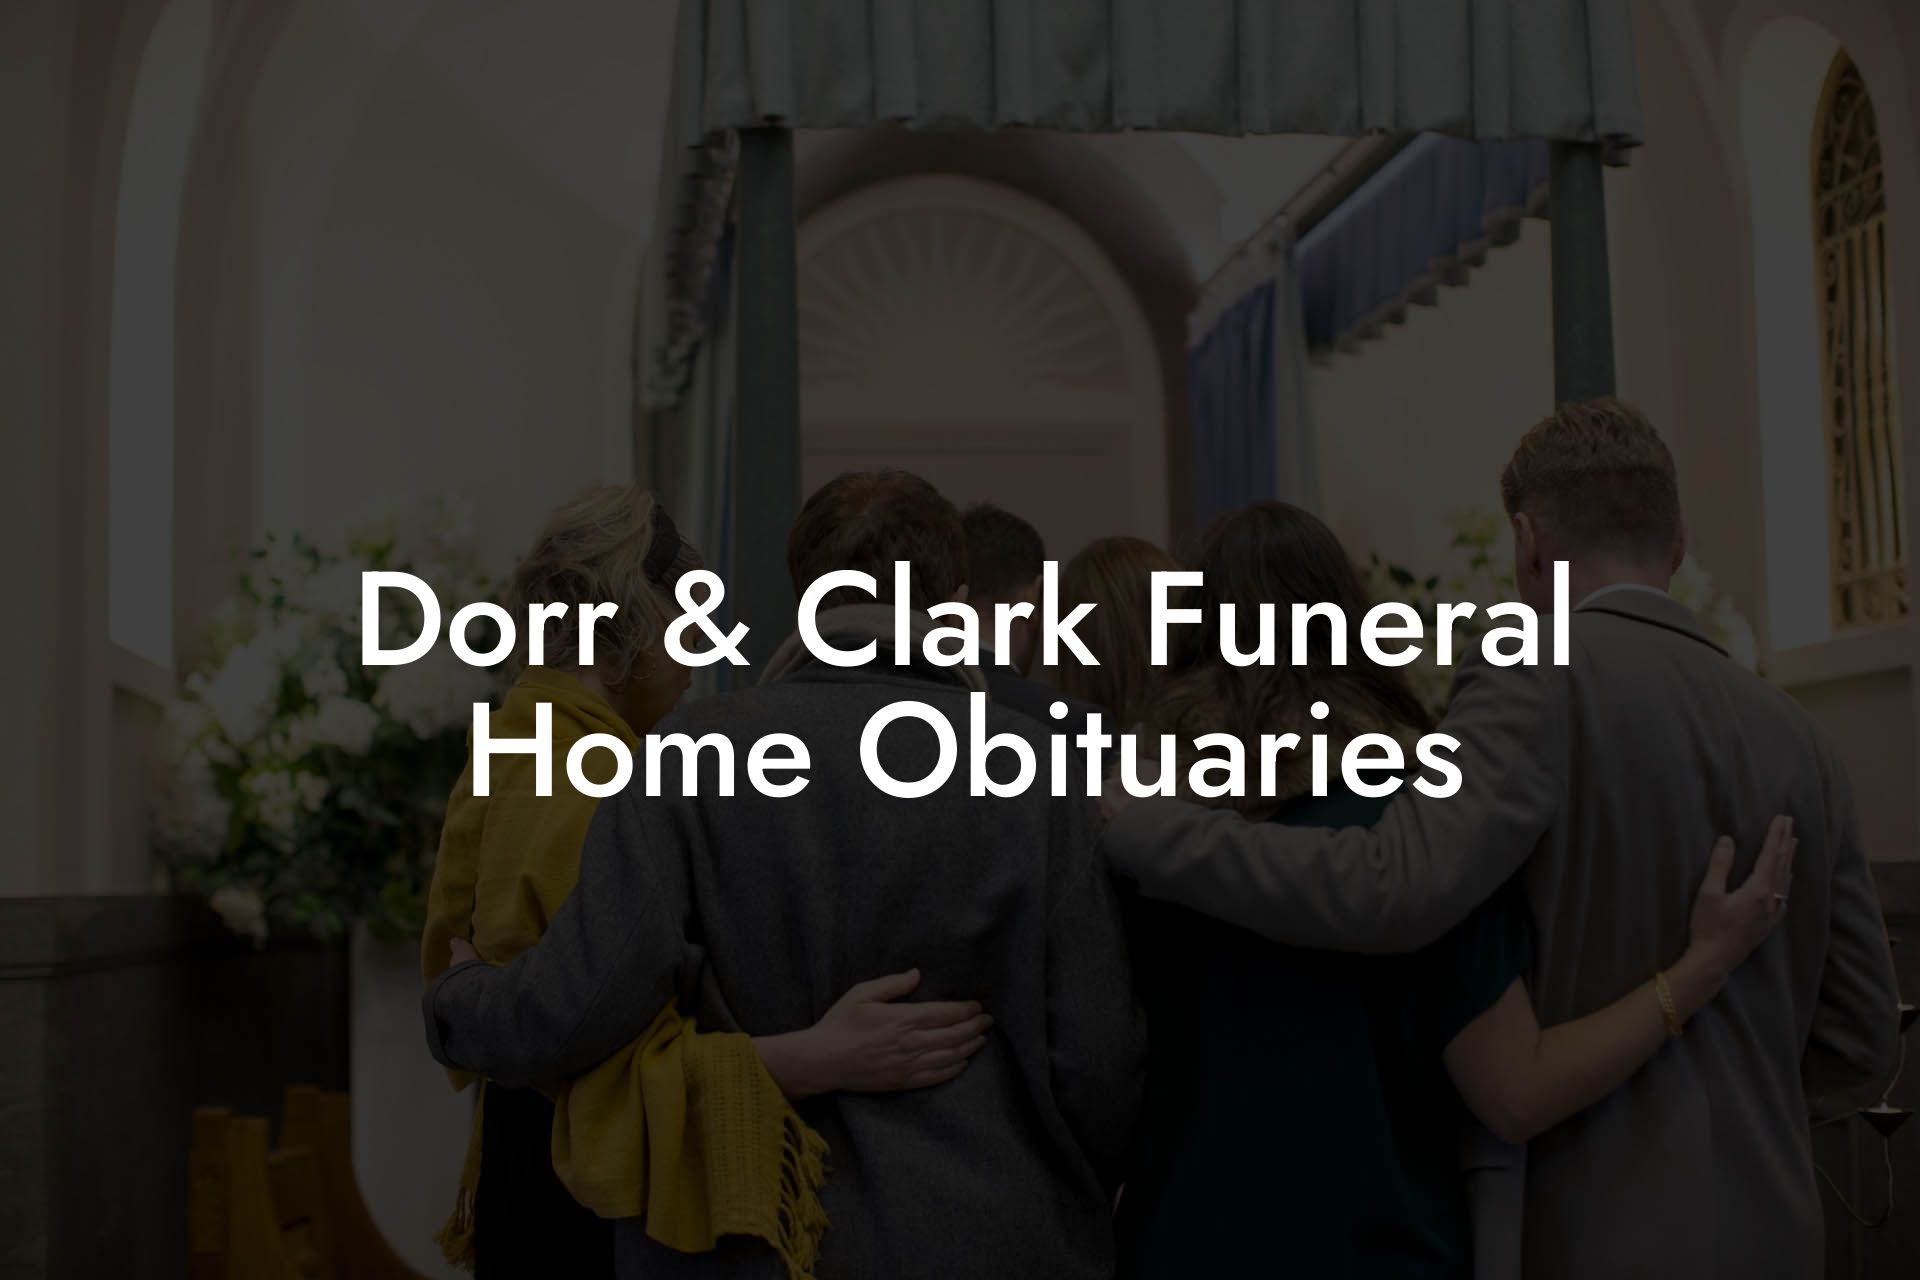 Dorr & Clark Funeral Home Obituaries